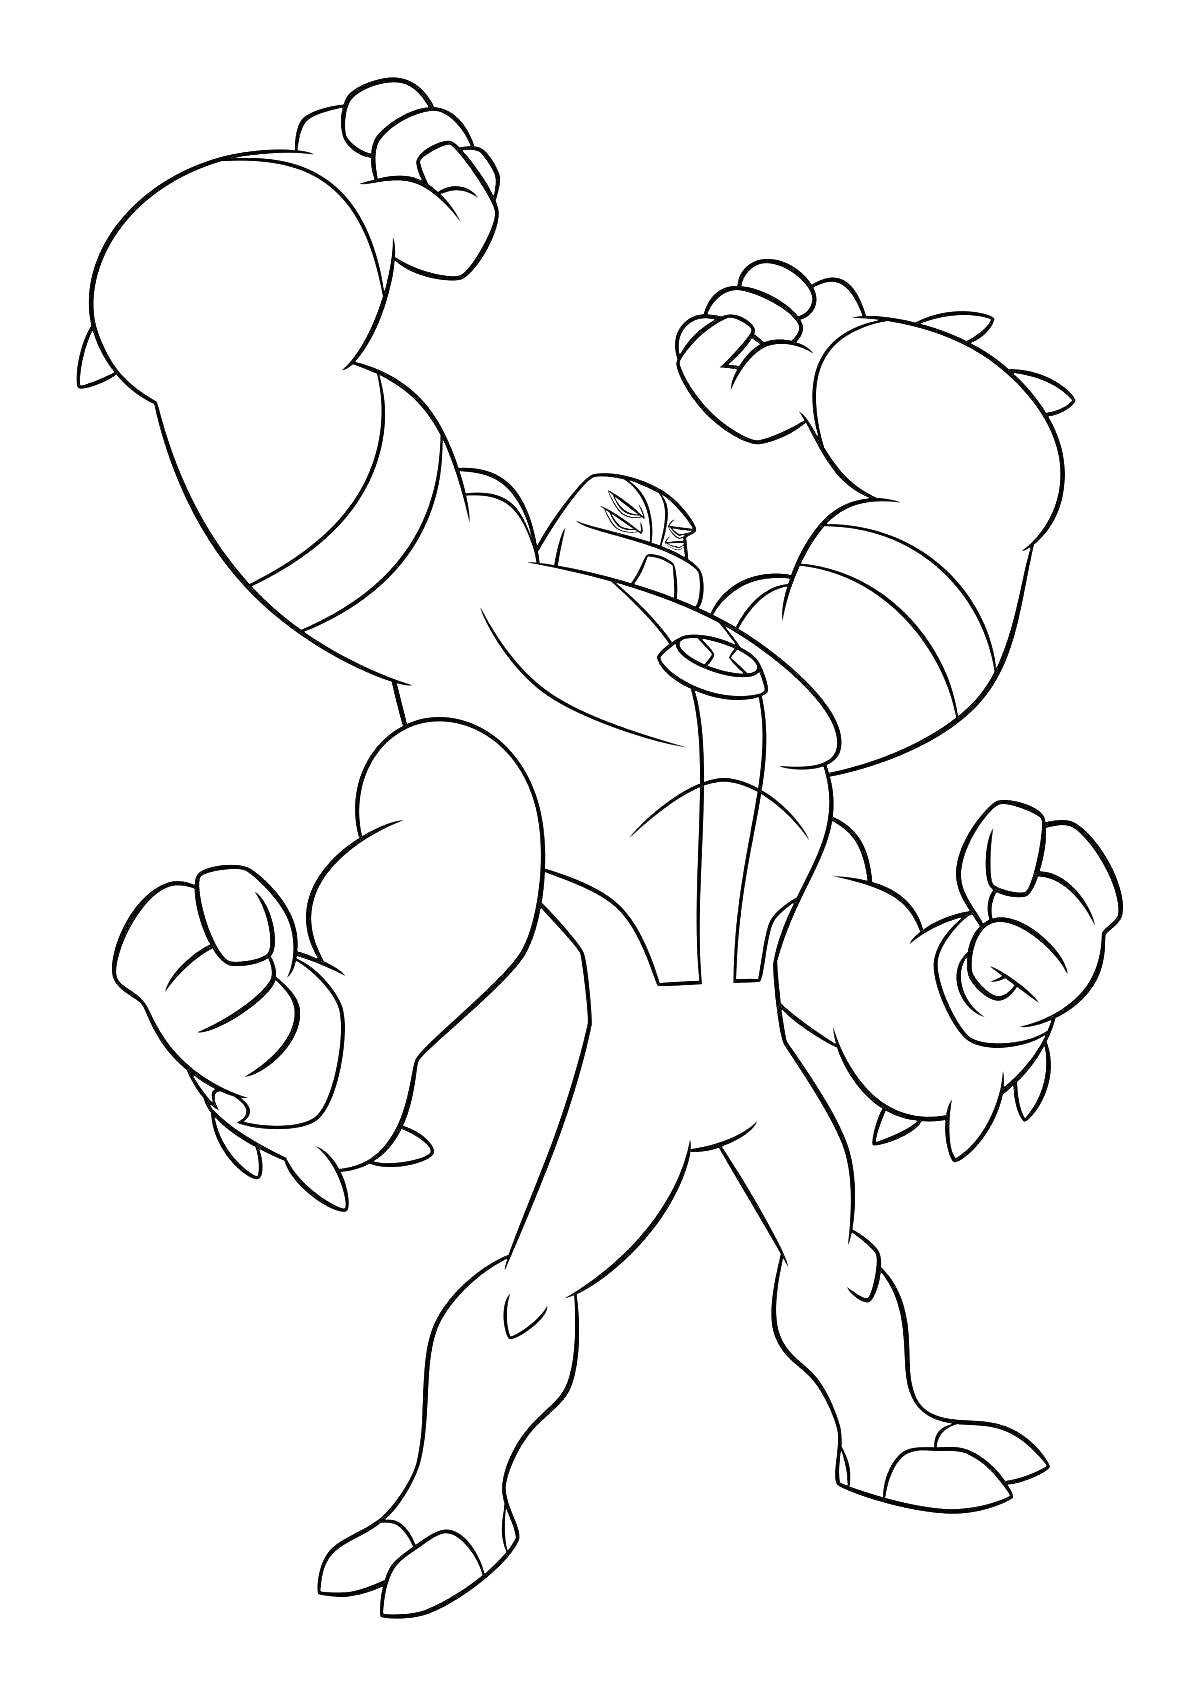 Раскраска Четырёхрукий пришелец из мультсериала Бен 10 с поднятыми кулаками